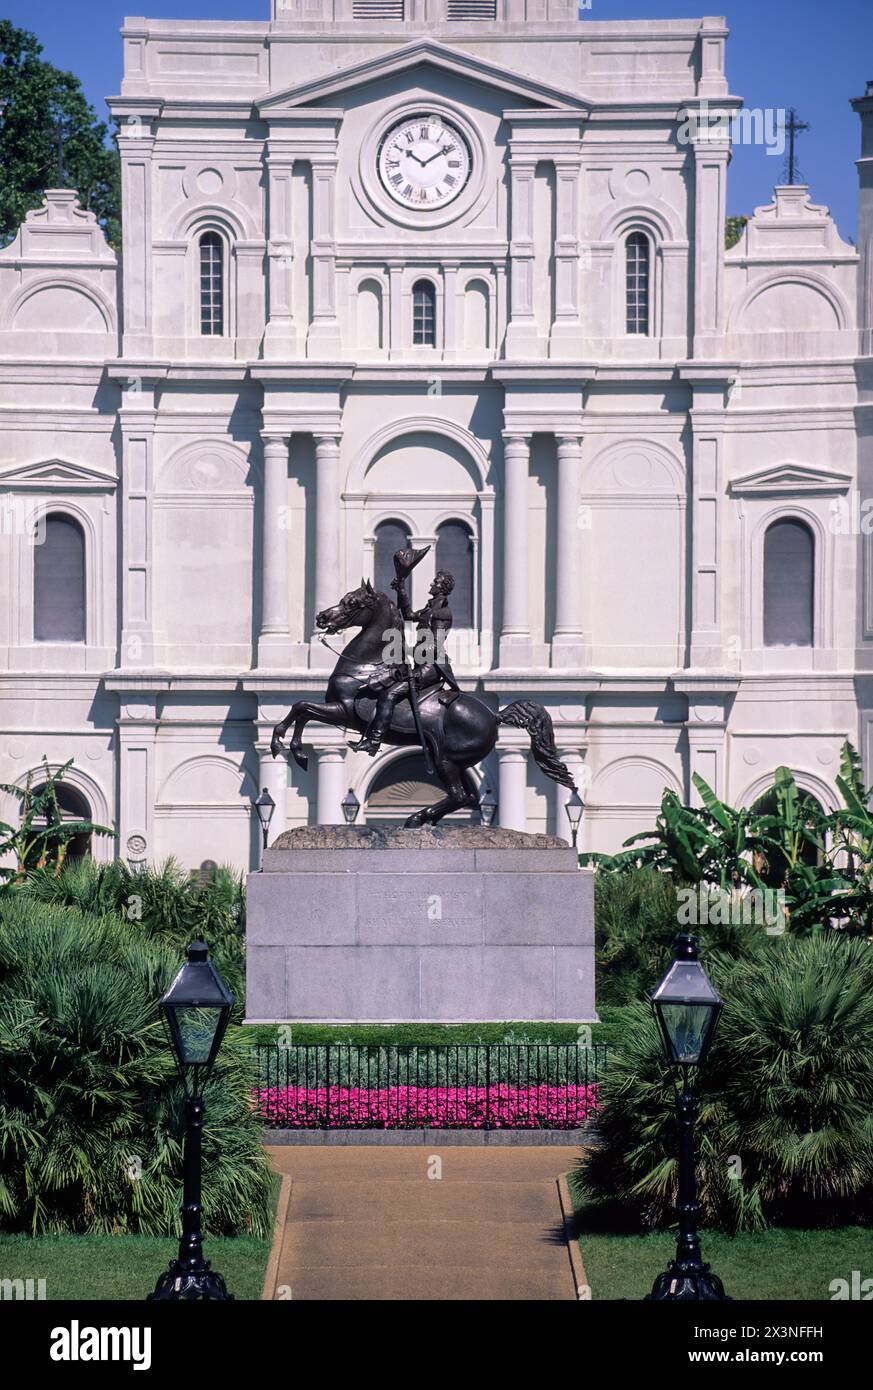 French Quarter, New Orleans, Louisiana.  Basilika St. Louis und Statue von Andrew Jackson, Jackson Square. Stockfoto